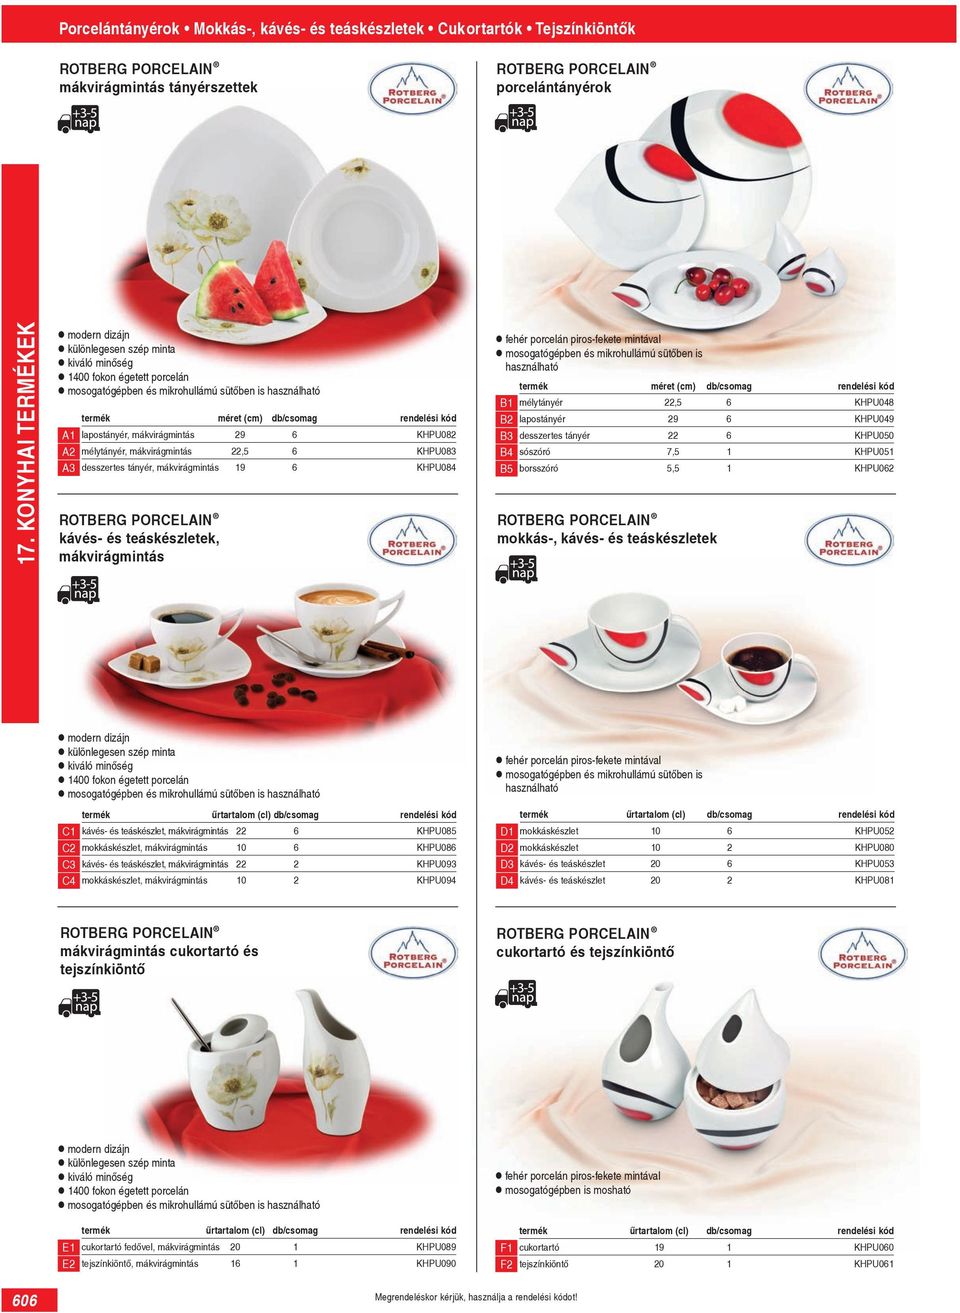 desszertes tányér, mákvirágmintás 19 KHPU084 ROTBERG PORCELAIN kávés- és teáskészletek, mákvirágmintás fehér porcelán piros-fekete mintával mosogatógépben és mikrohullámú sütőben is használható méret